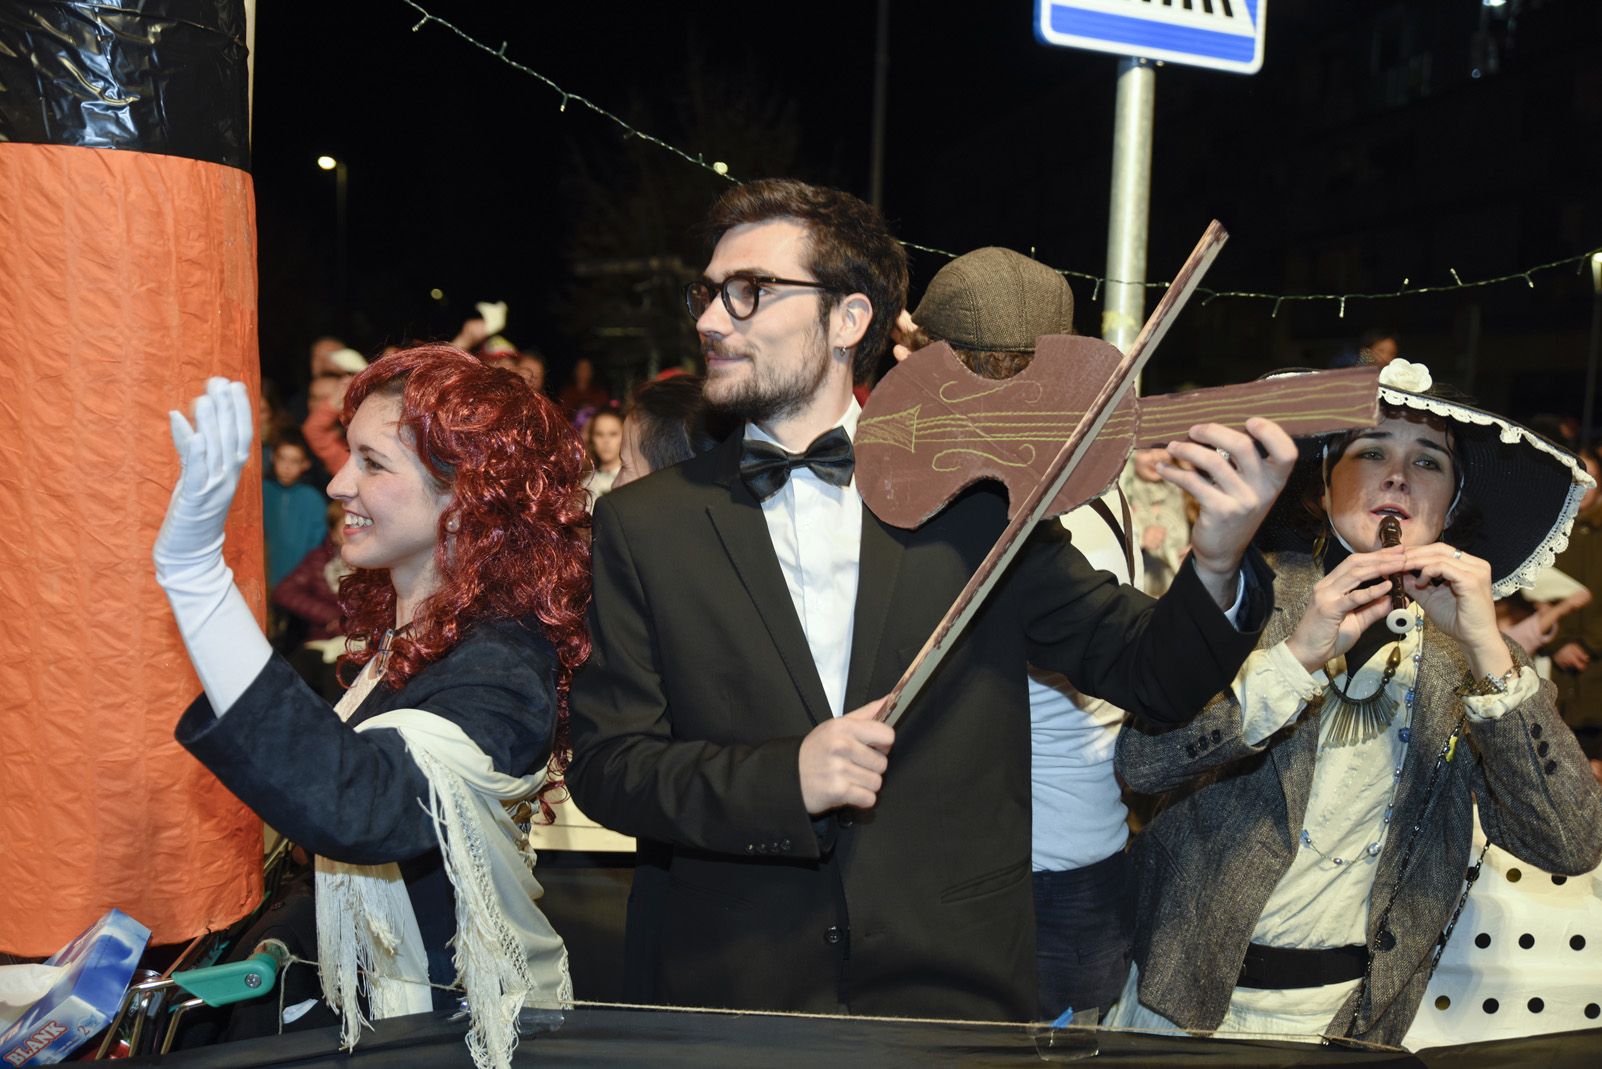 Rua i concurs de comparses de Carnaval. Foto: Bernat Millet.